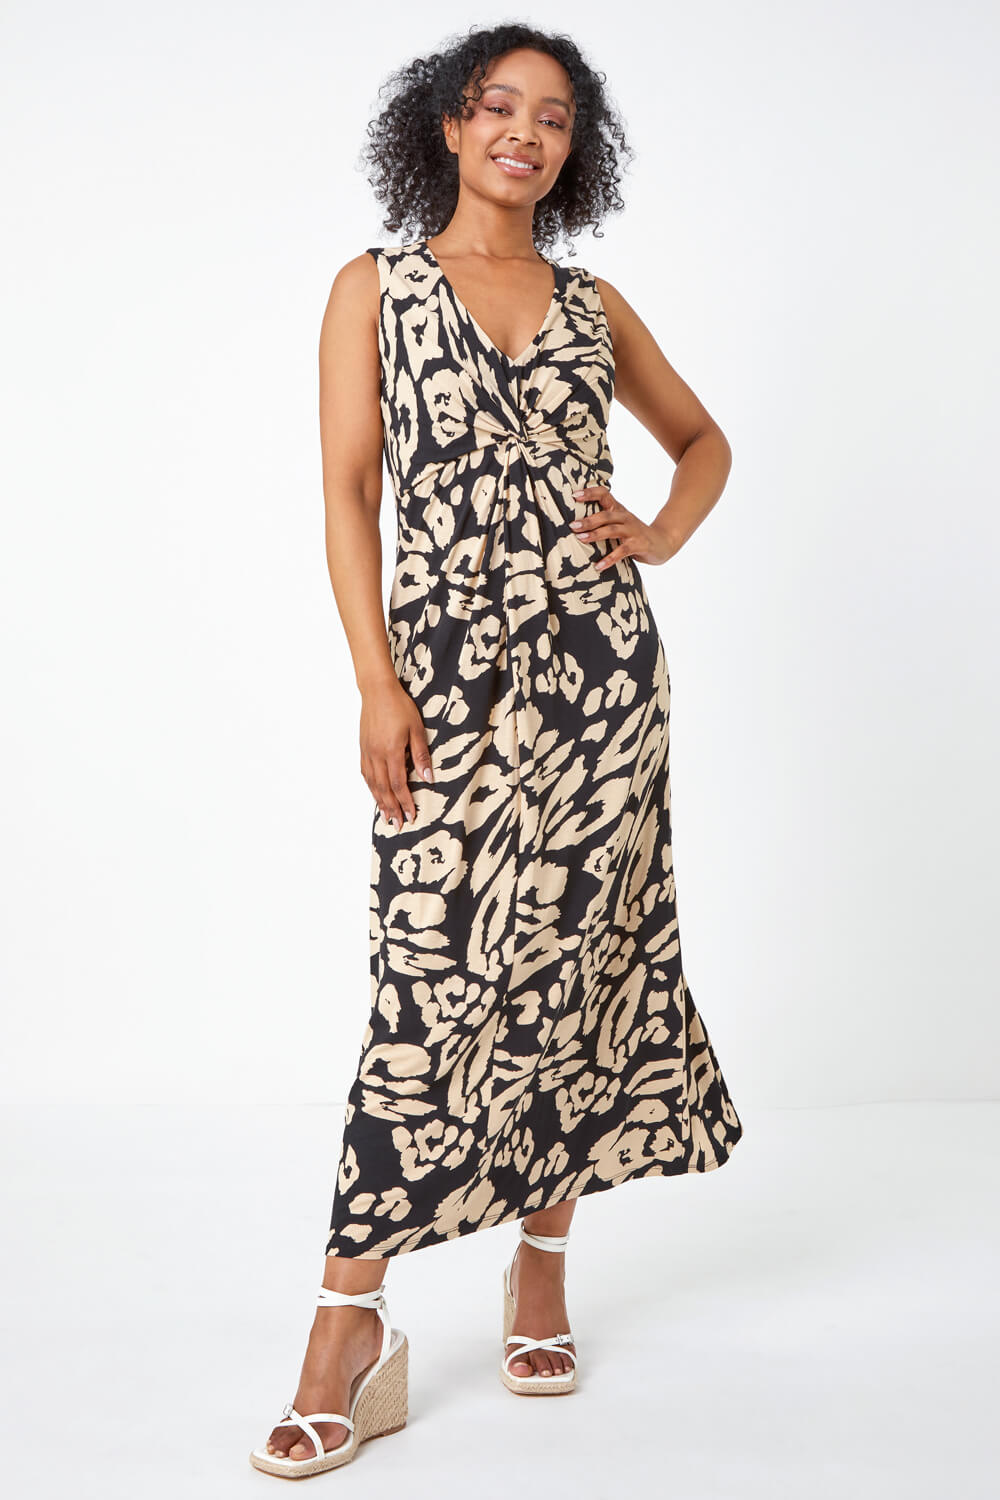 Black Petite Leopard Print Twist Jersey Maxi Dress, Image 4 of 5